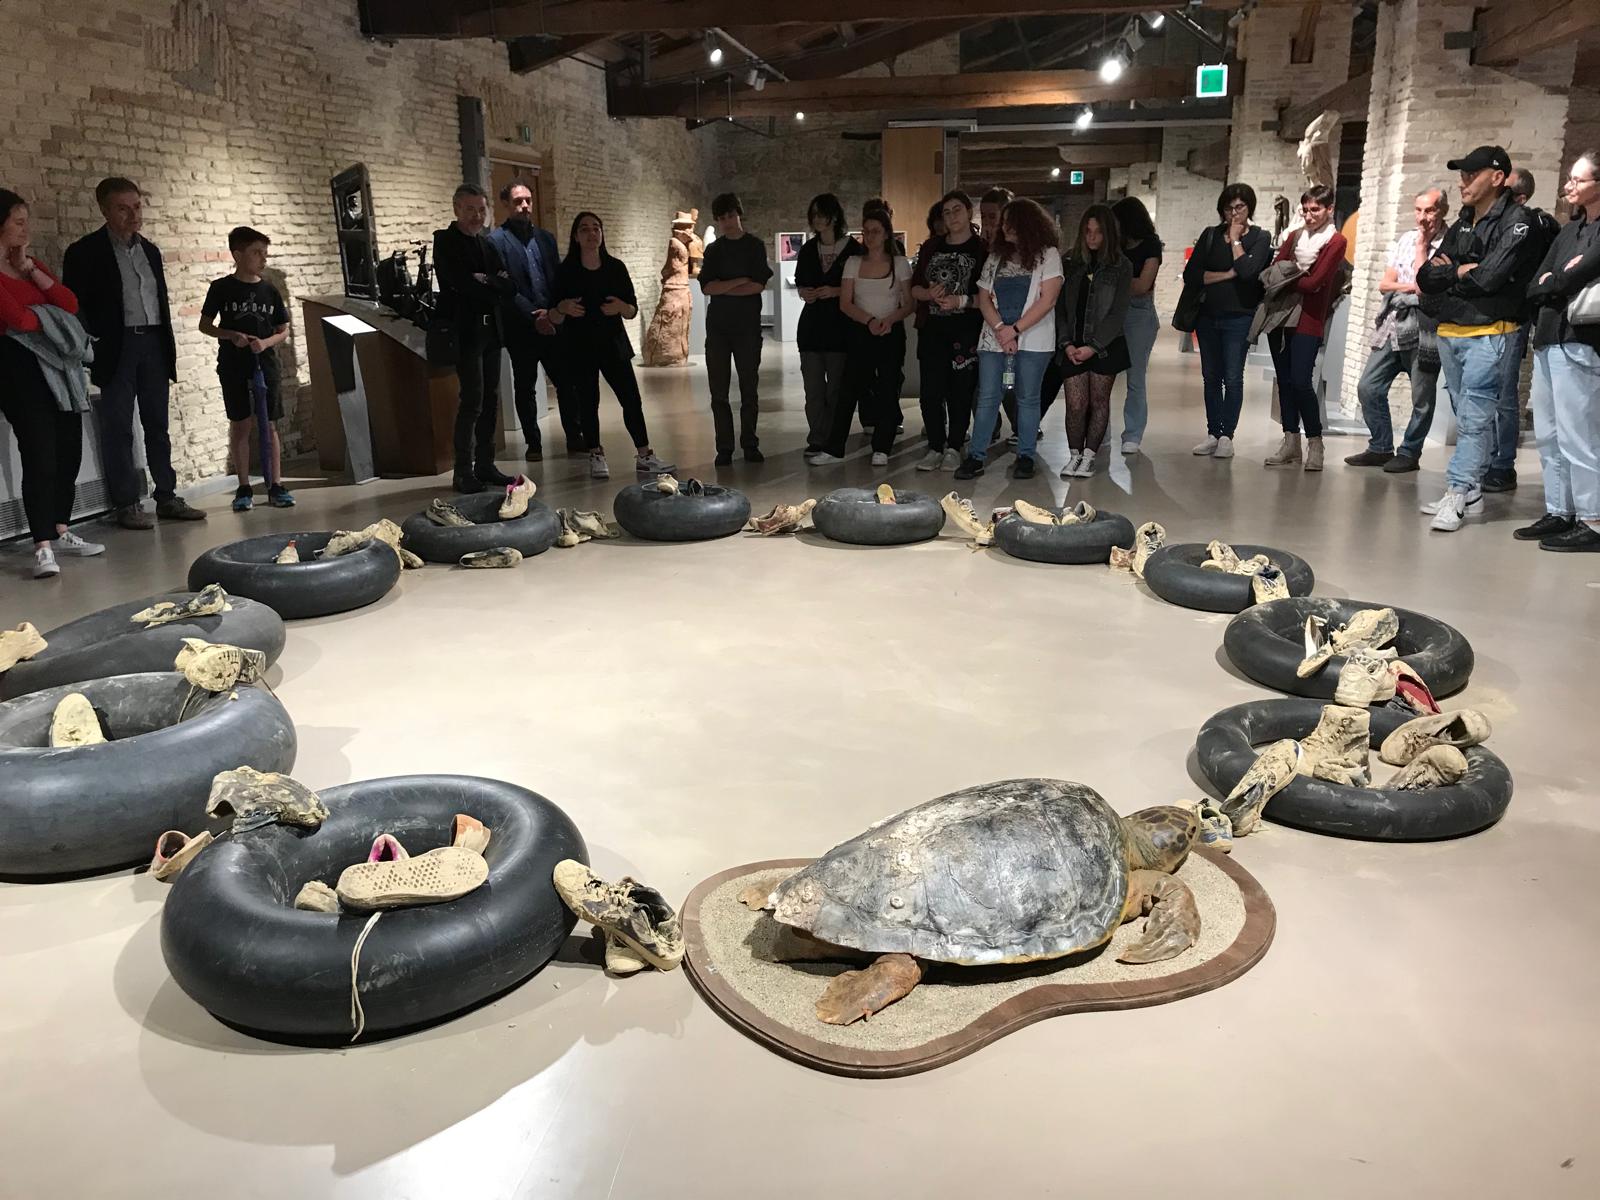 L'installazione circolare: a terra a comporre un circolo la tartaruga imbalsamata e 11 pneumatici salvagenti neri su cui poggiano vecchie scarpe infangate.